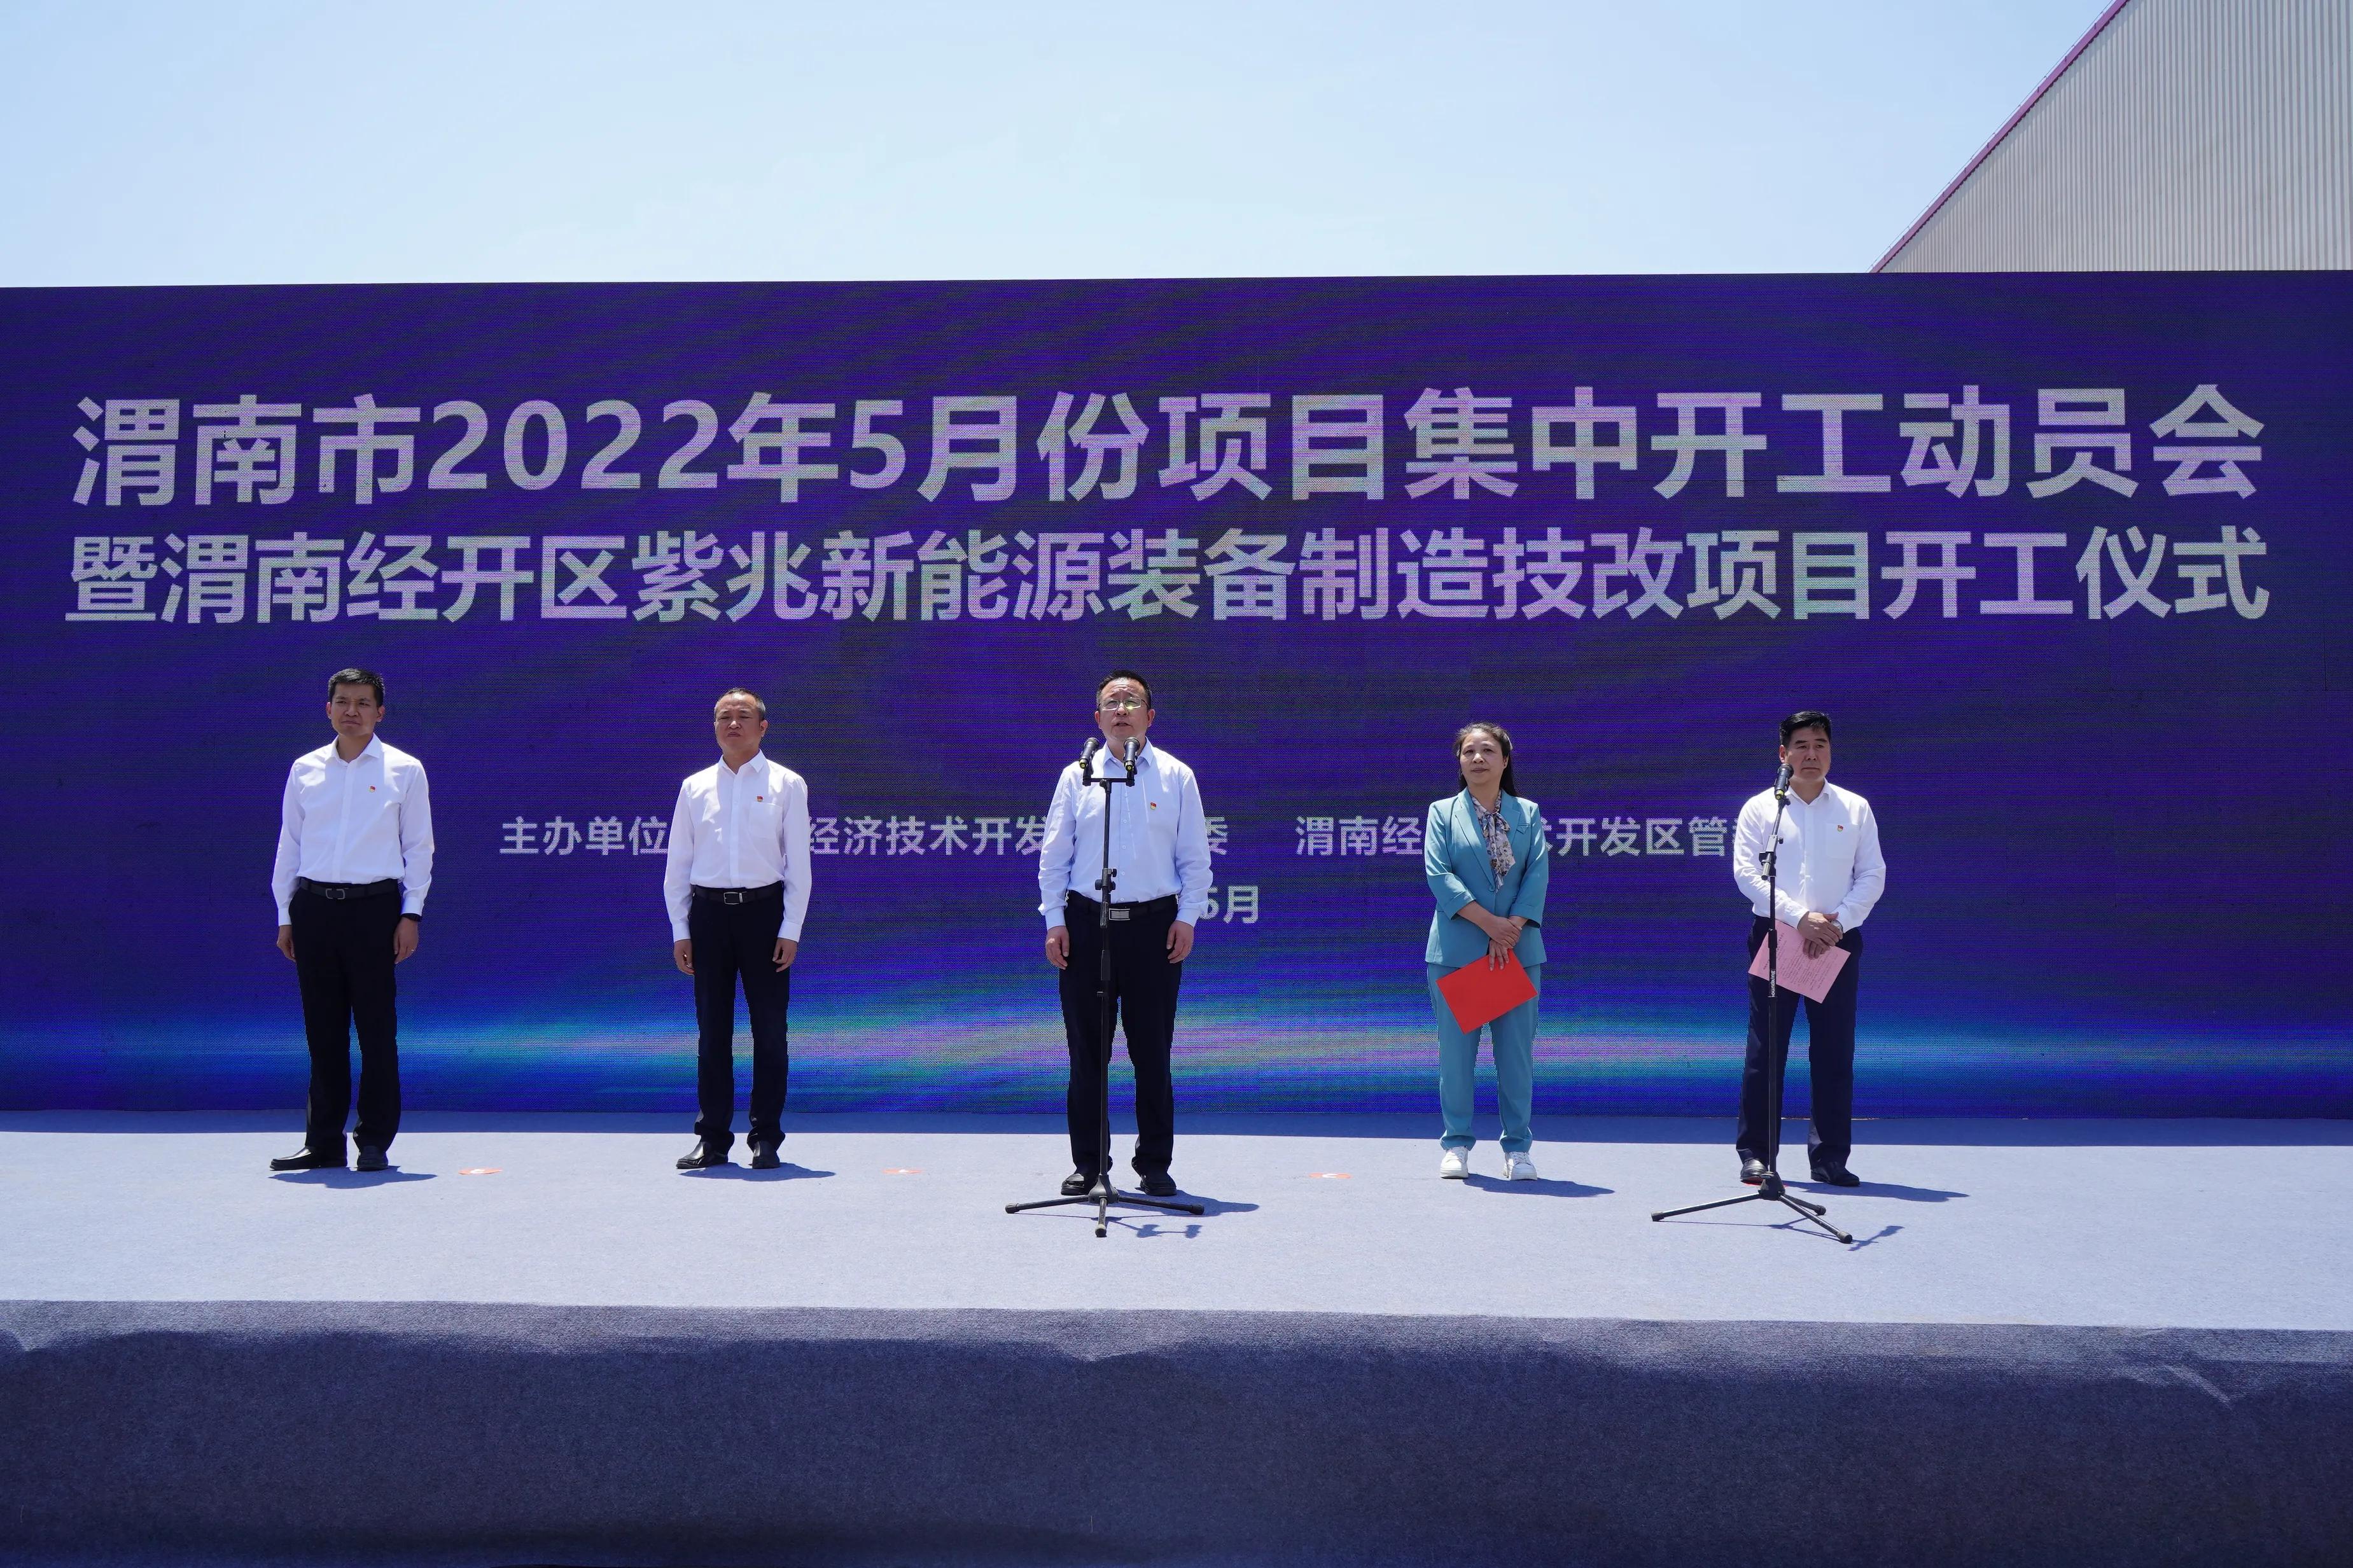 渭南经开区举行2022年第5次项目集中开工动员会